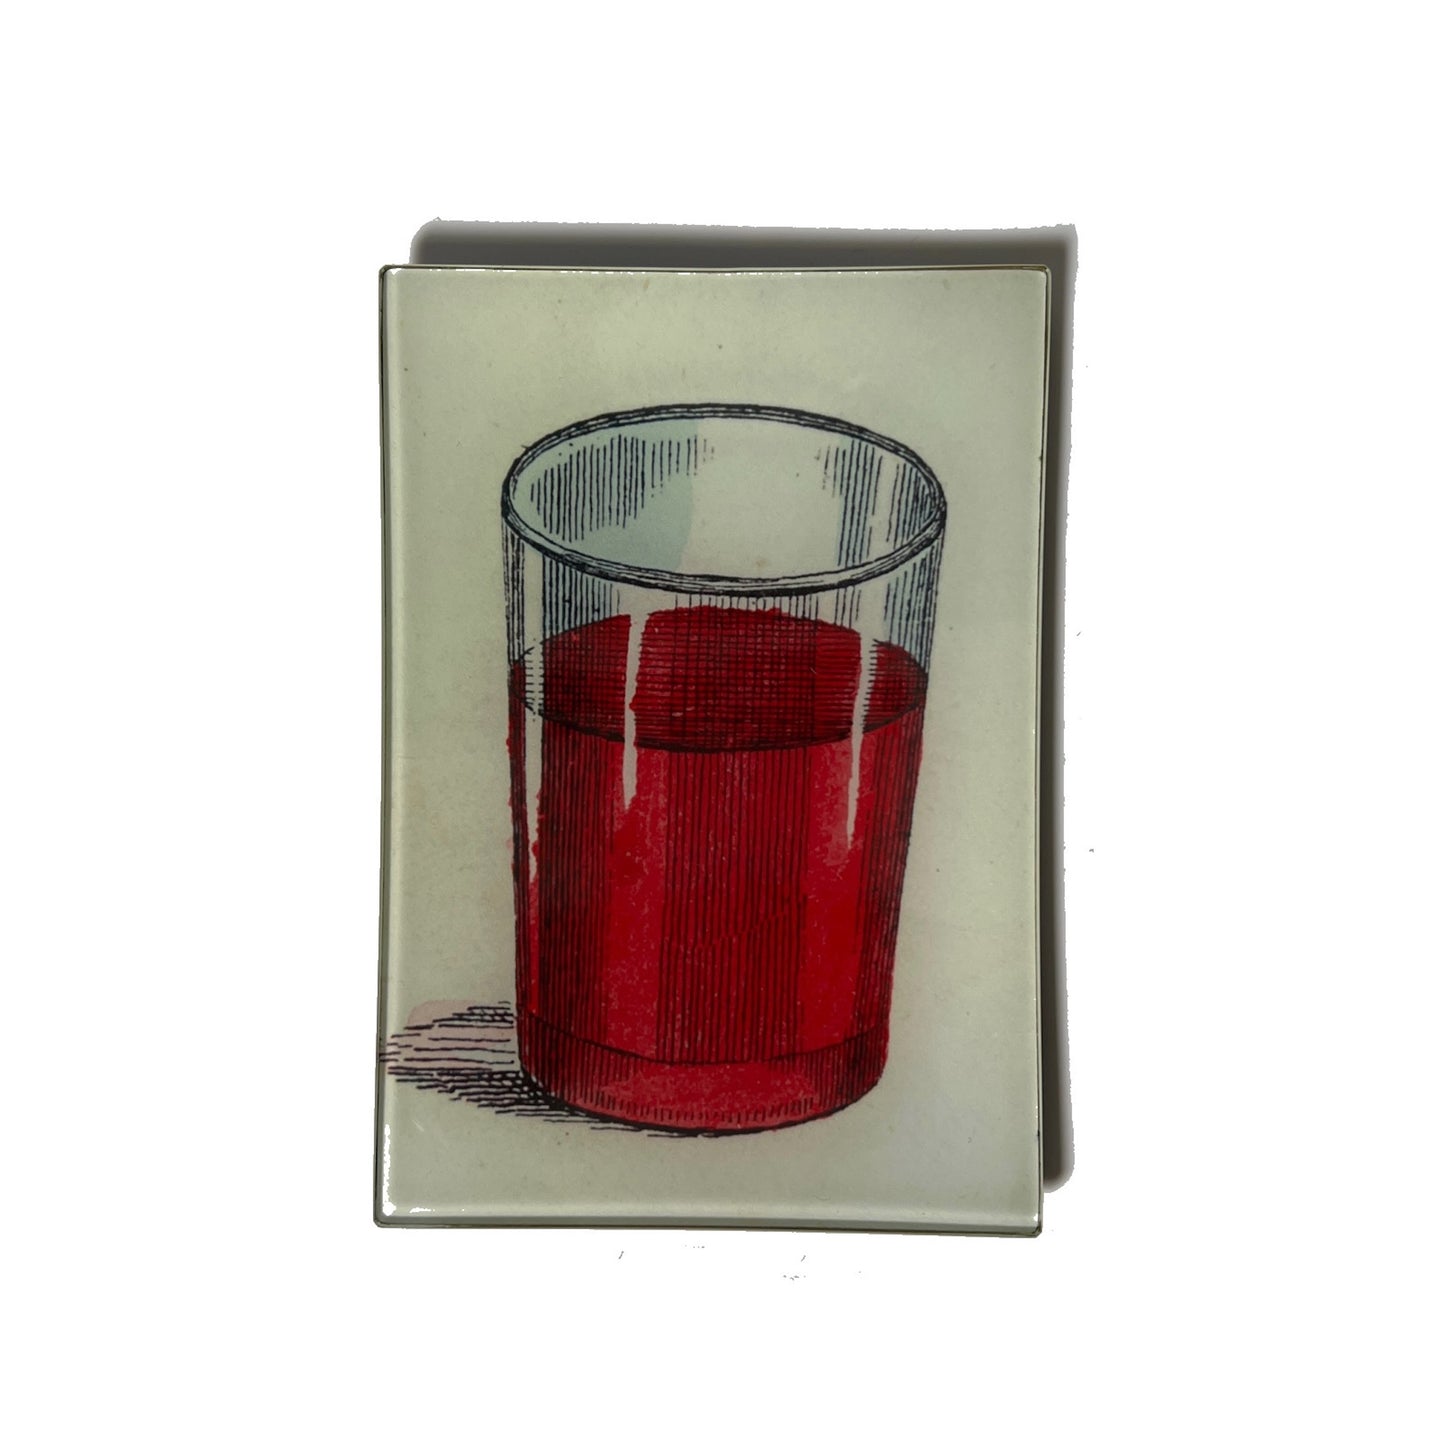 【JOHN DERIAN】デコパージュプレート Glass